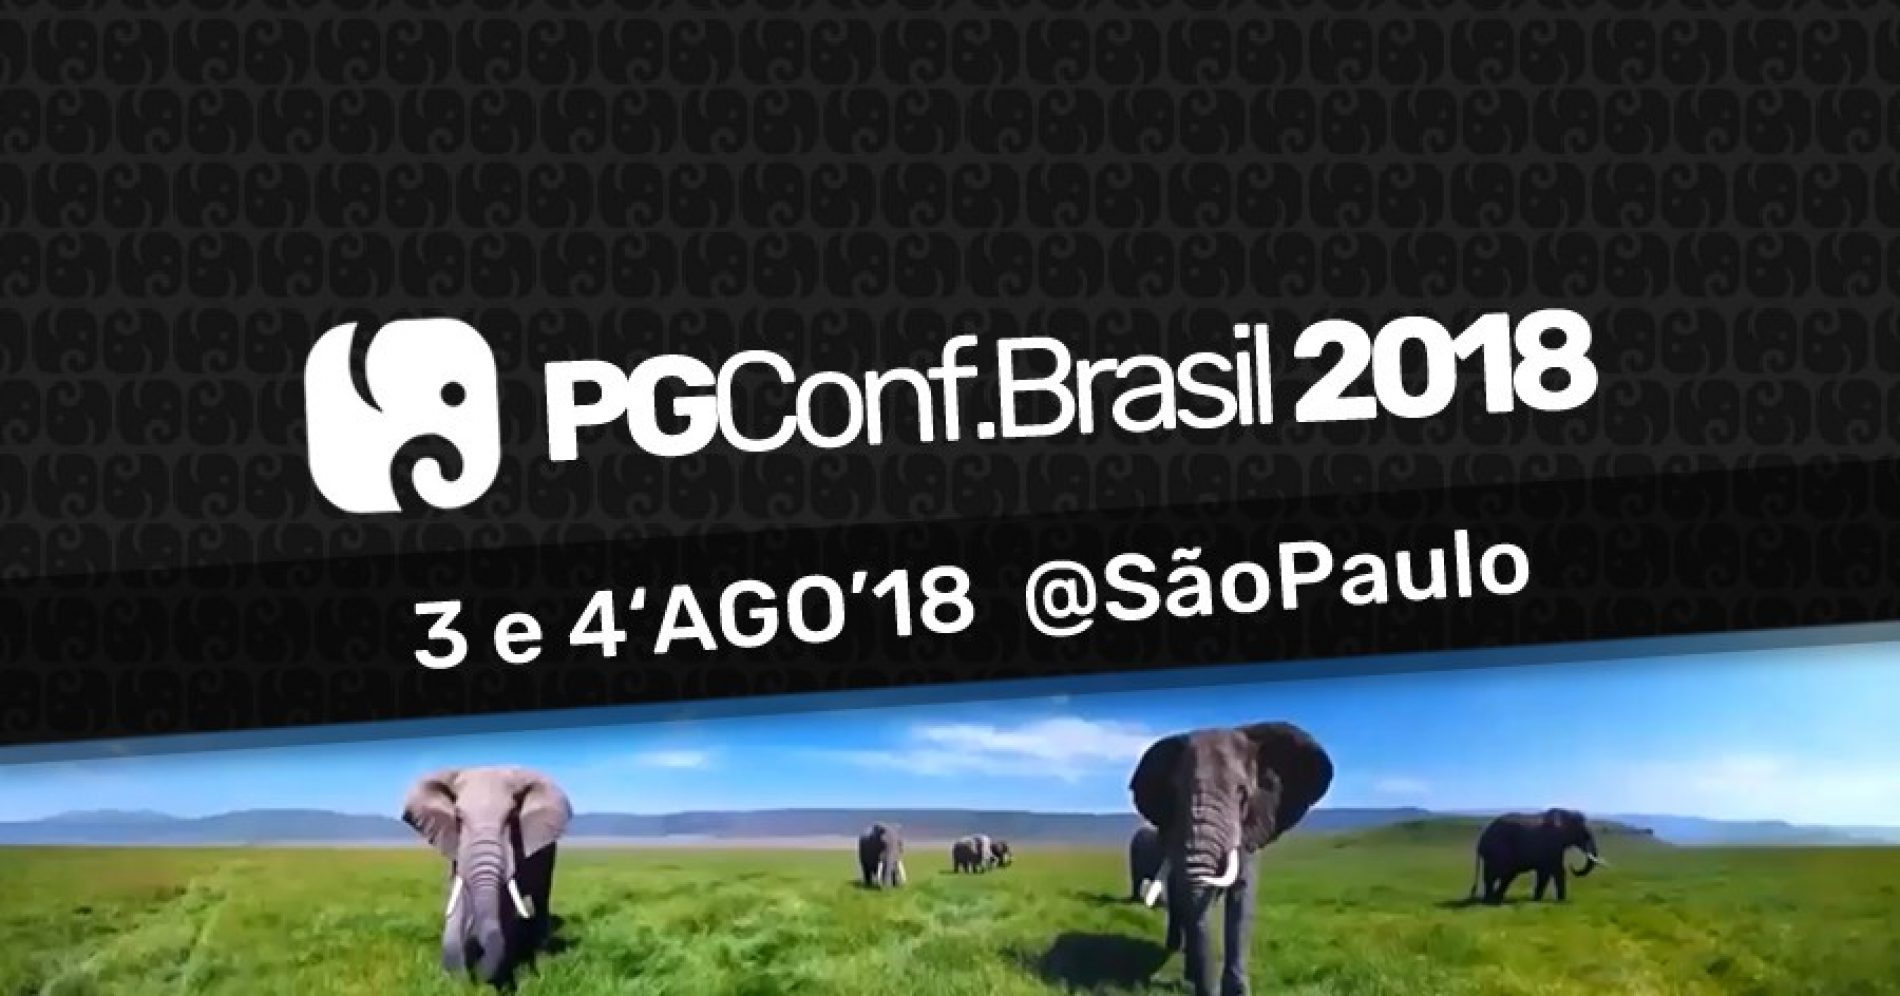 4Linux estará presente no maior evento PostgreSQL do Brasil.